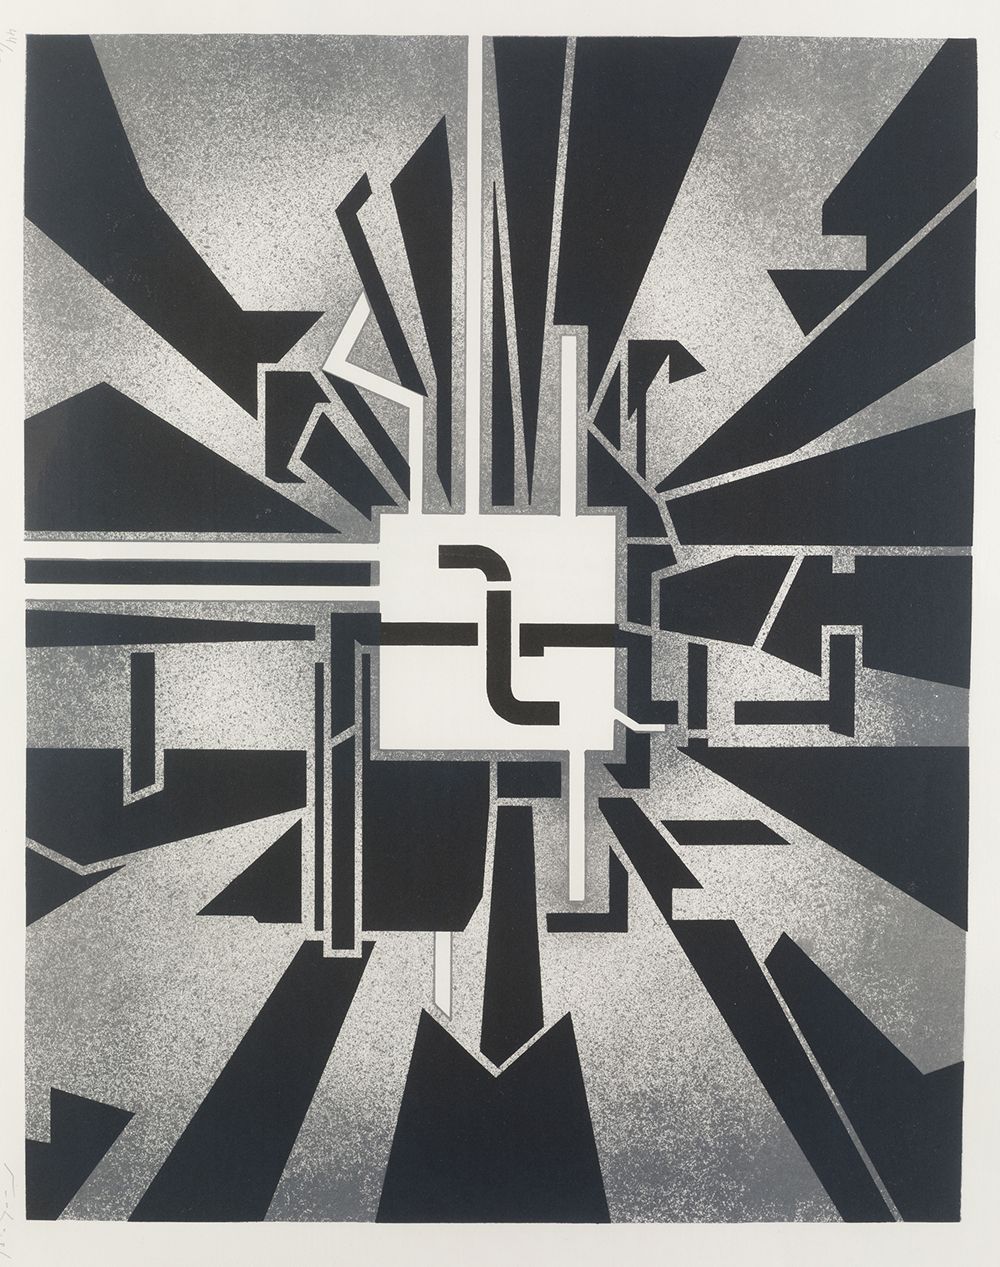 NACHO ANGULO (1952 / .) "Untitled" 1981 底部有铅笔签名的日期和理由44/50。纸张：56 x 65 cm. 丝网印刷